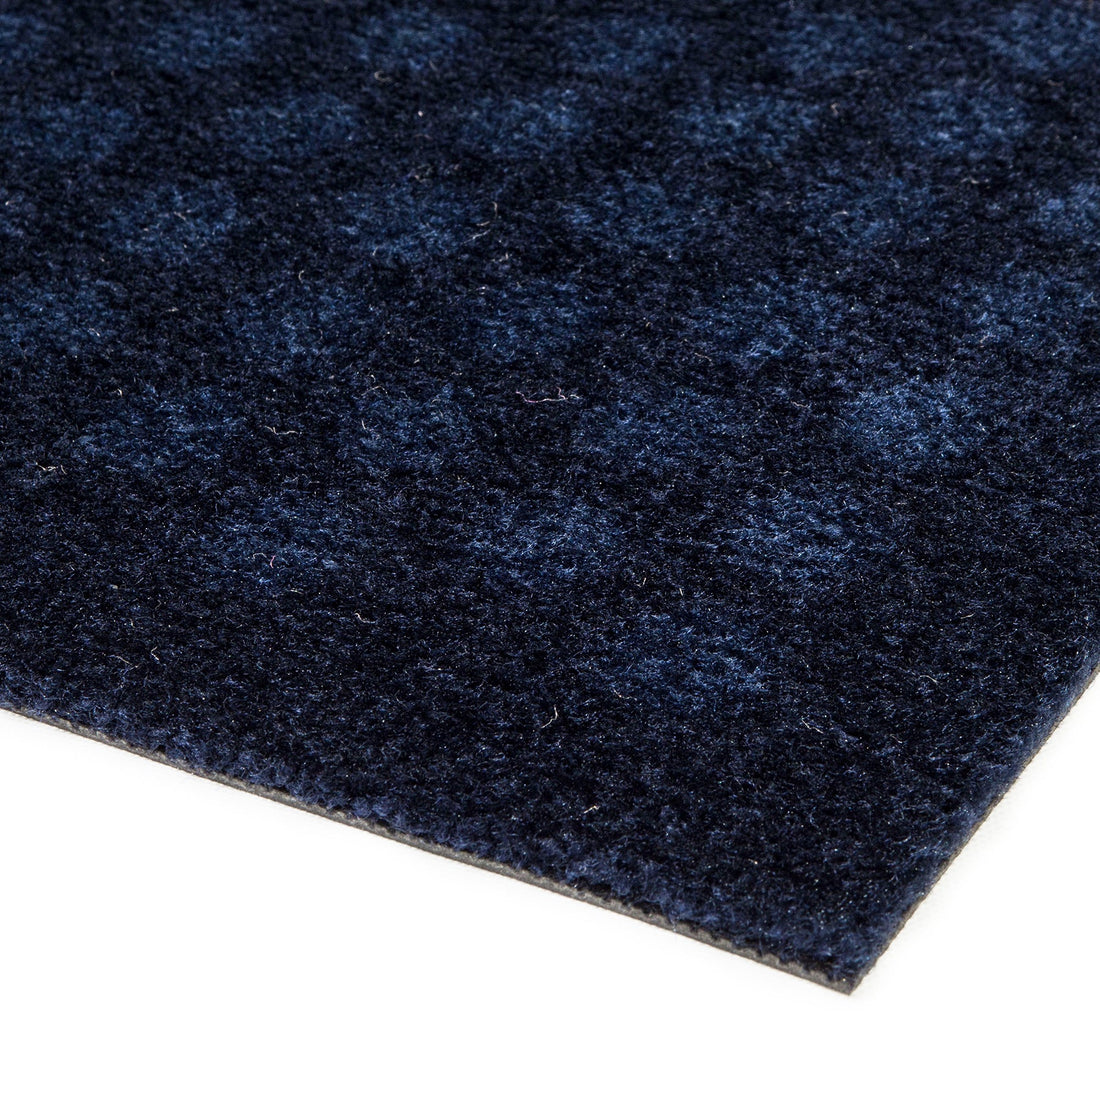 Bodenmatte 60 x 90 cm - Punkte/Blau